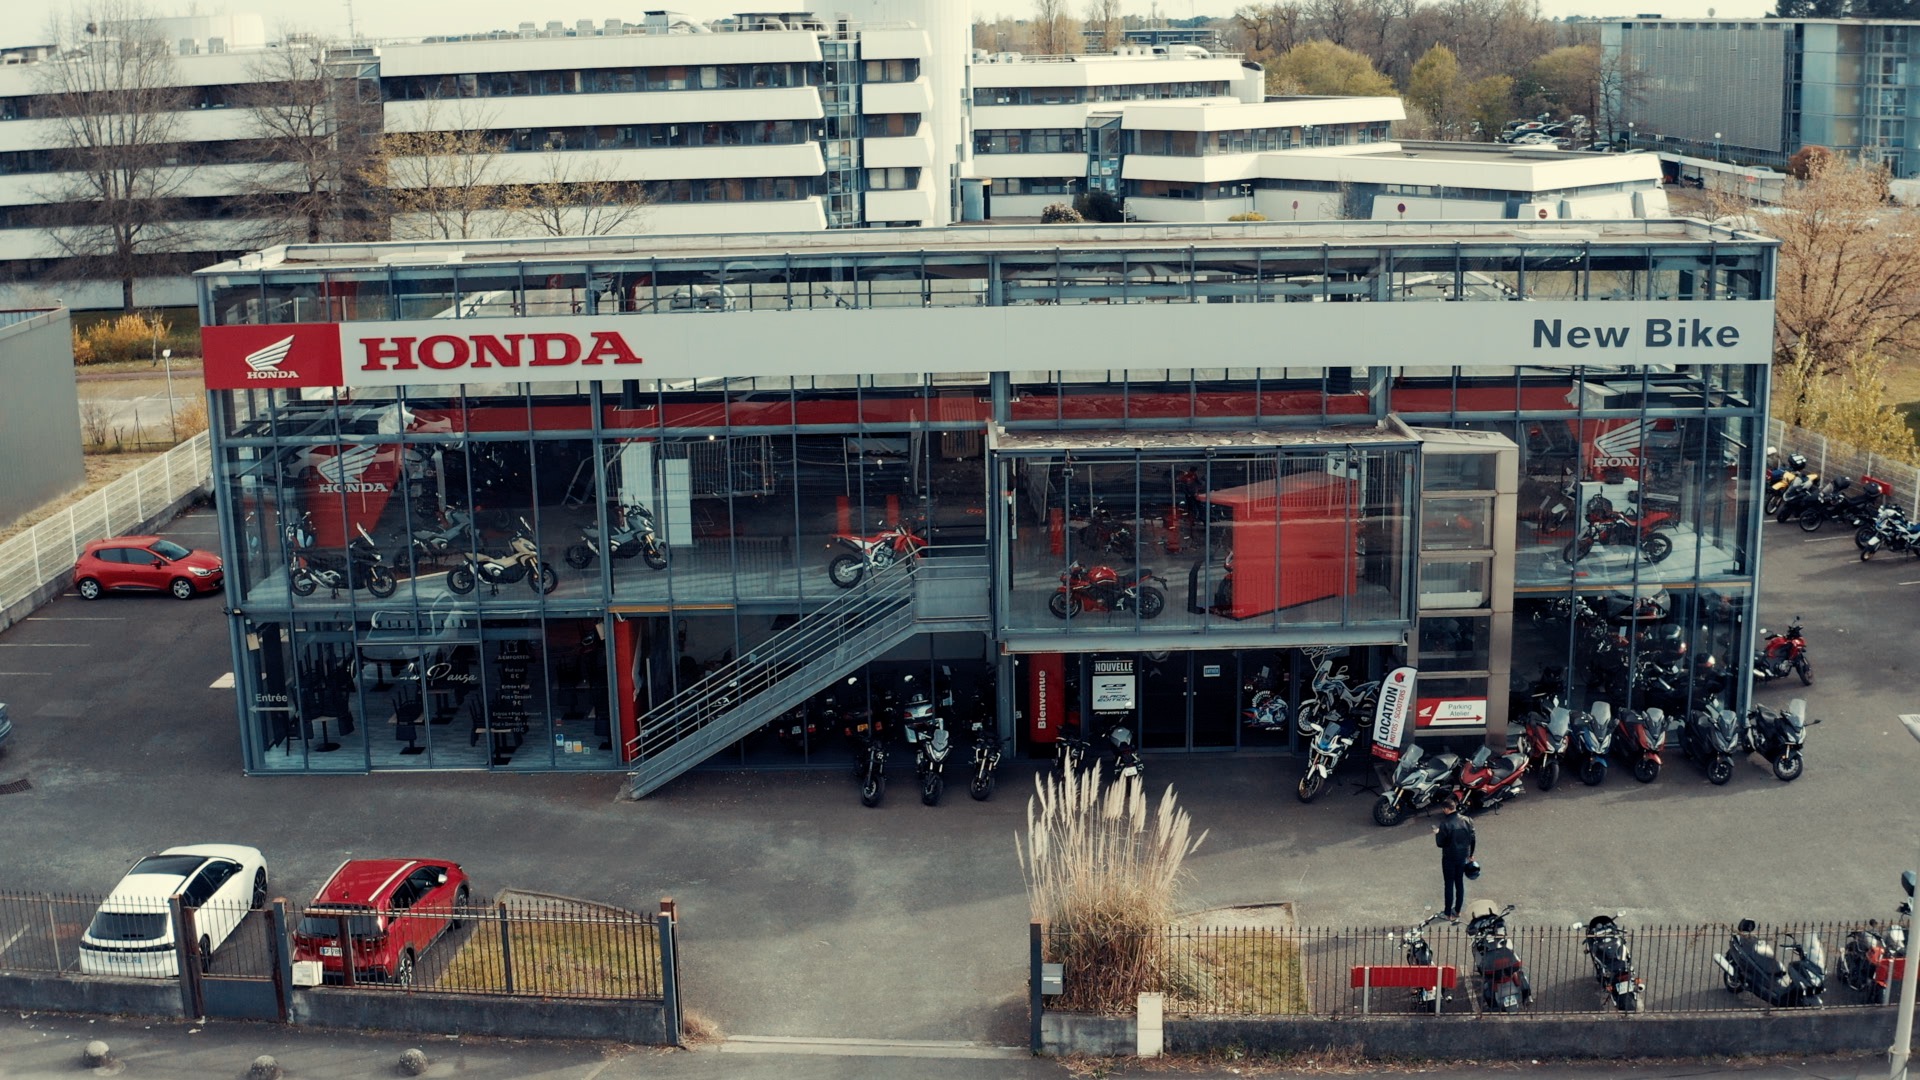 Honda - Voici un extrait de la vidéo de l'extérieur réalisé pour Honda France de la concession HONDA Moto New Bike à Mérignac par le vidéaste Henri Guillon à Poitiers